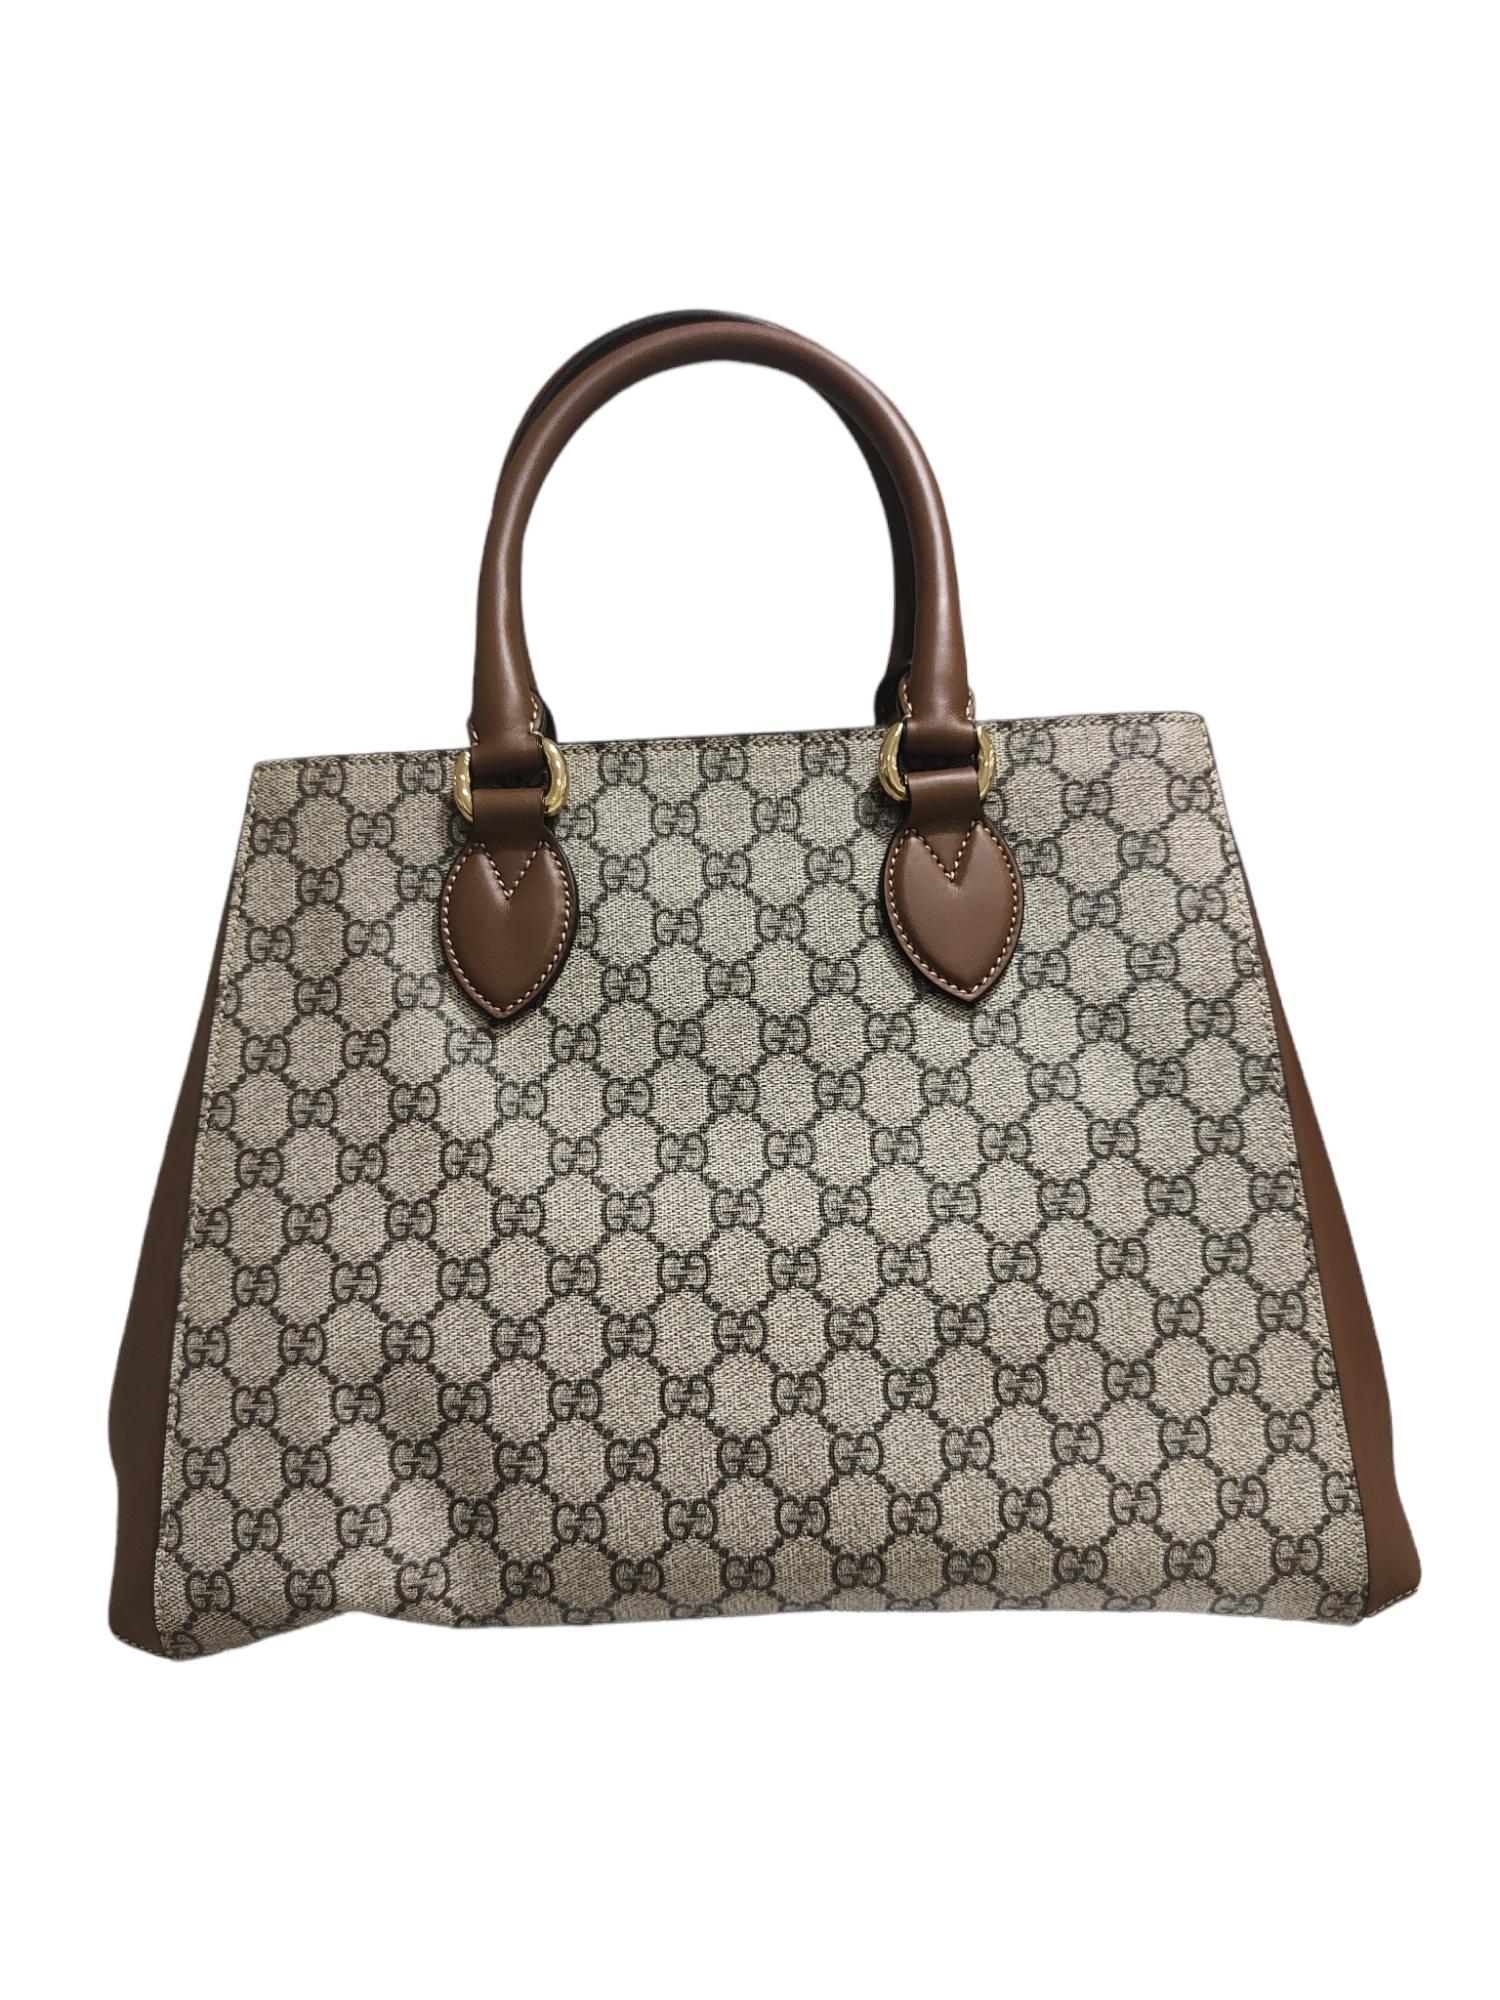 Gucci GG Blind for Love shoulder handbag NWOT 3